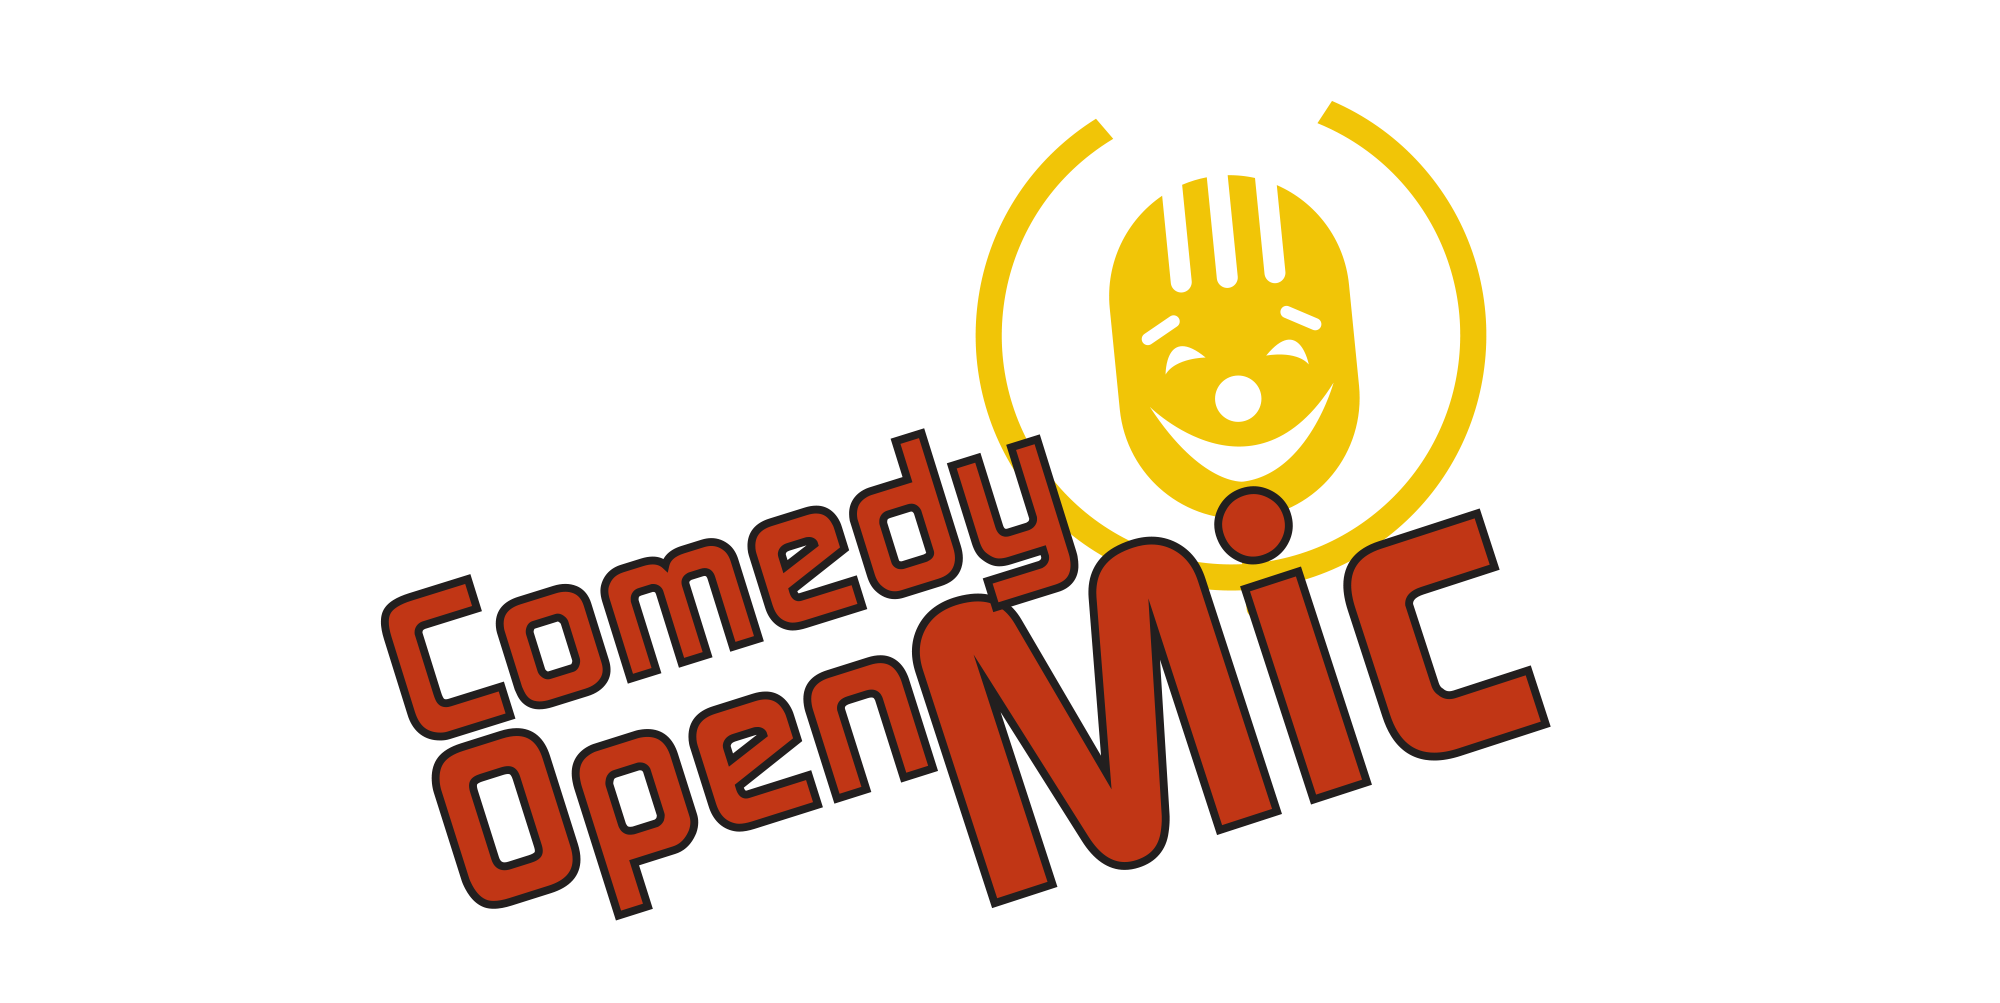 Comedy Stars - Comedy Show Logo Ident | Comedy show, Comedy, Logo design